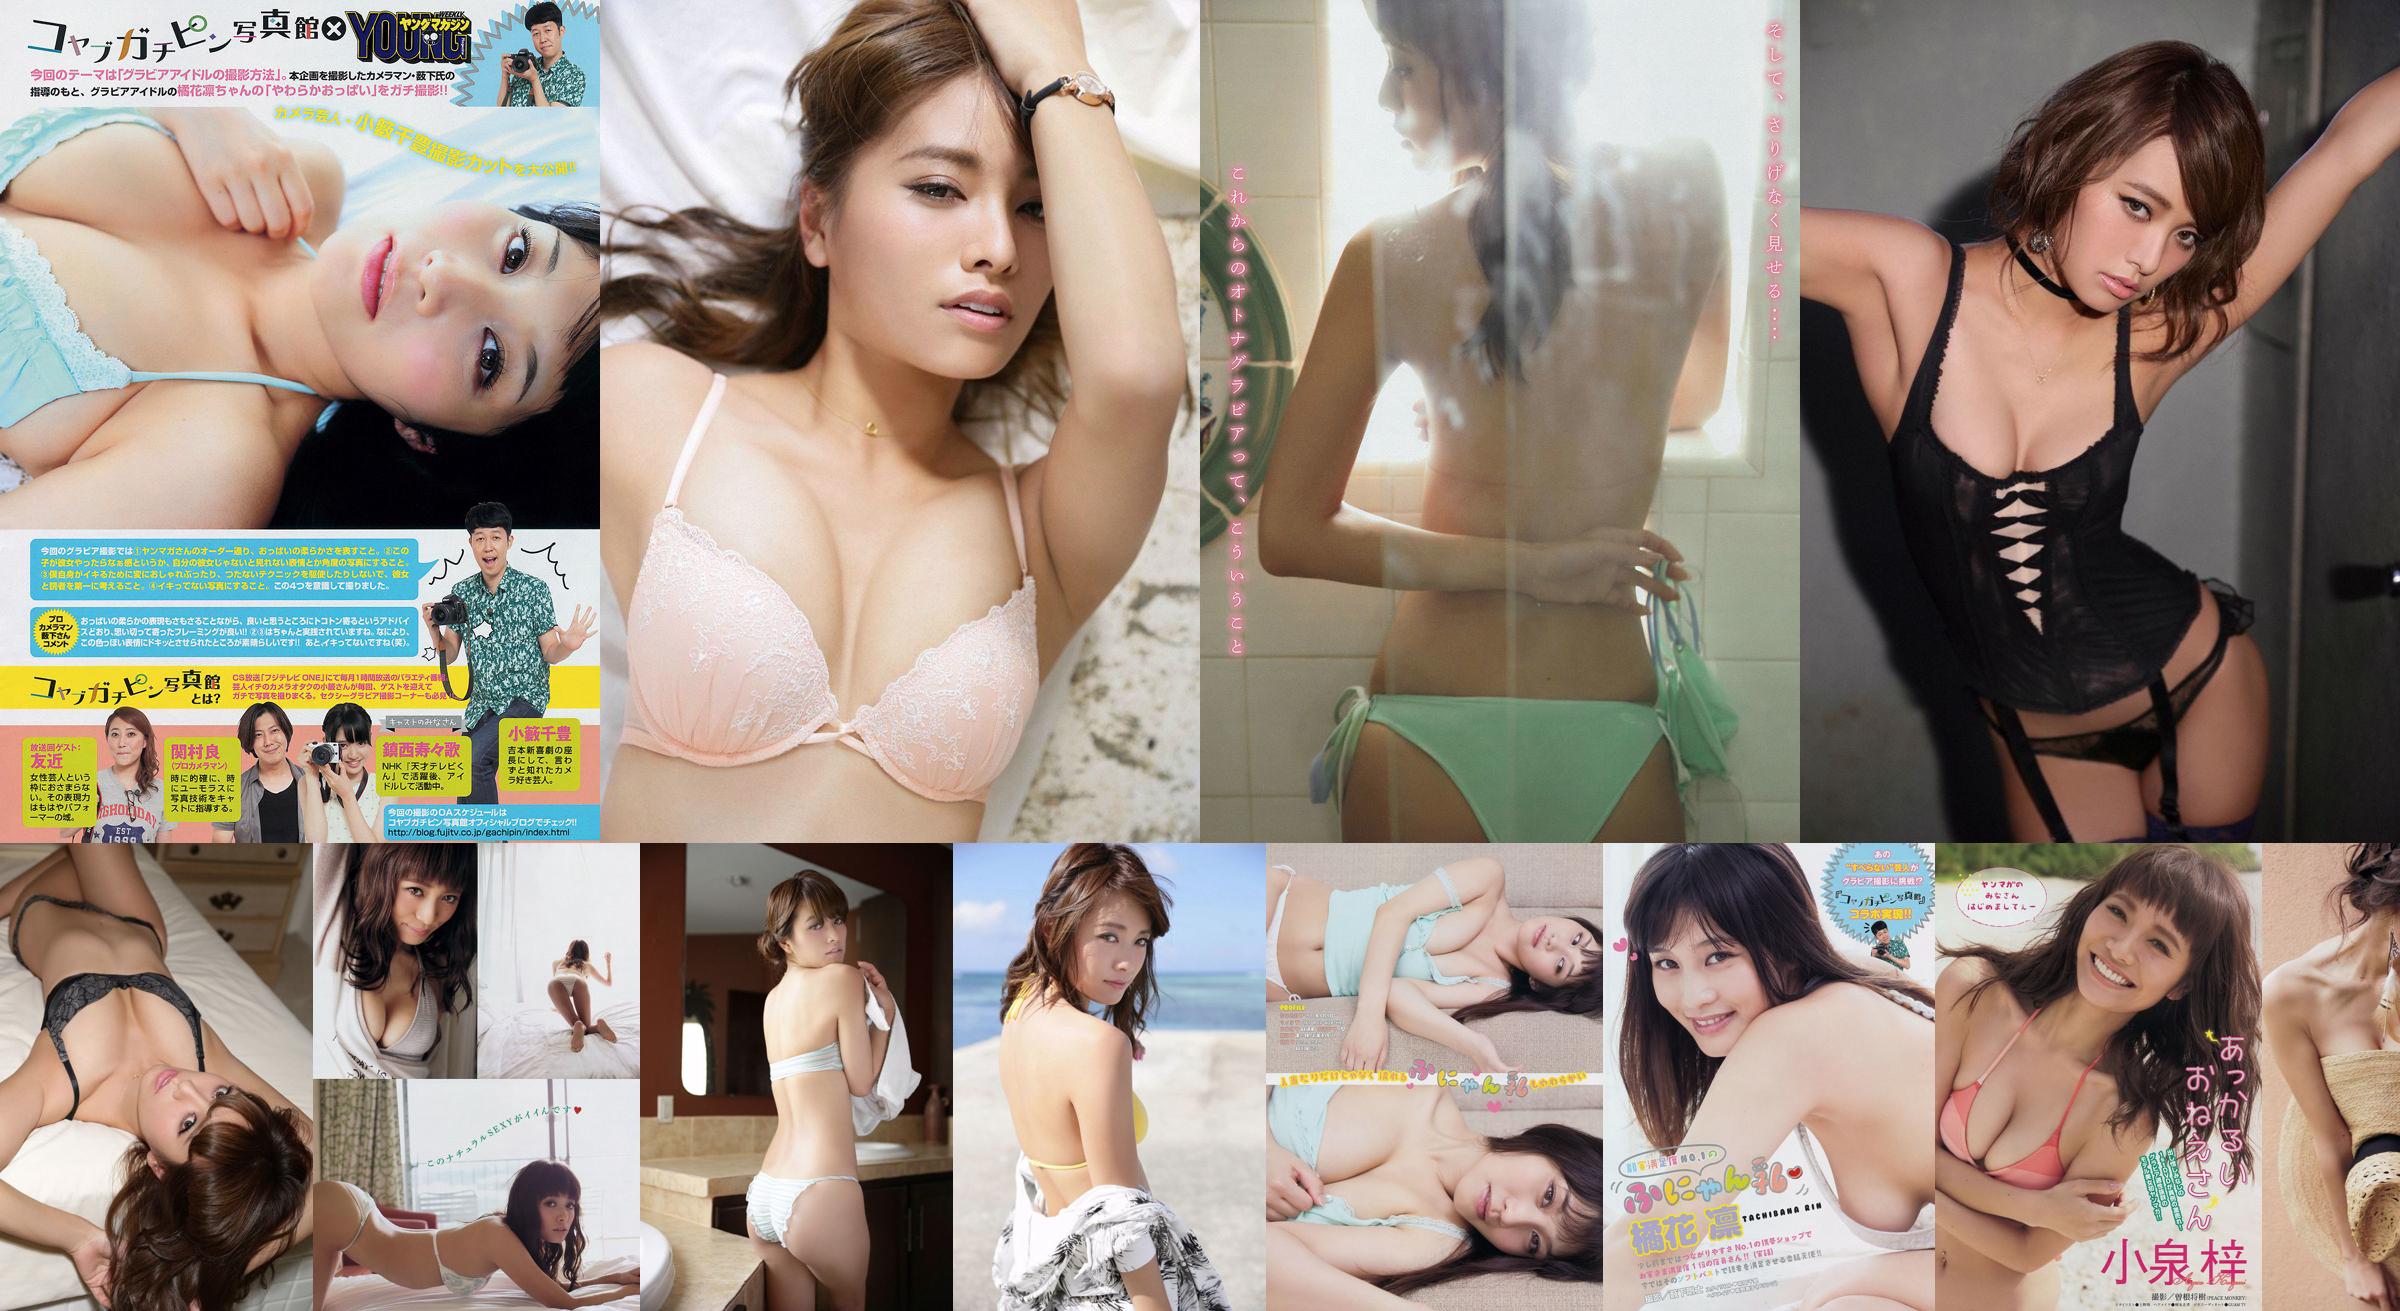 [Young Magazine] Azusa Koizumi Tachibana Rin 2014 No.43 Photo Magazine No.5d0fdf Pagina 1